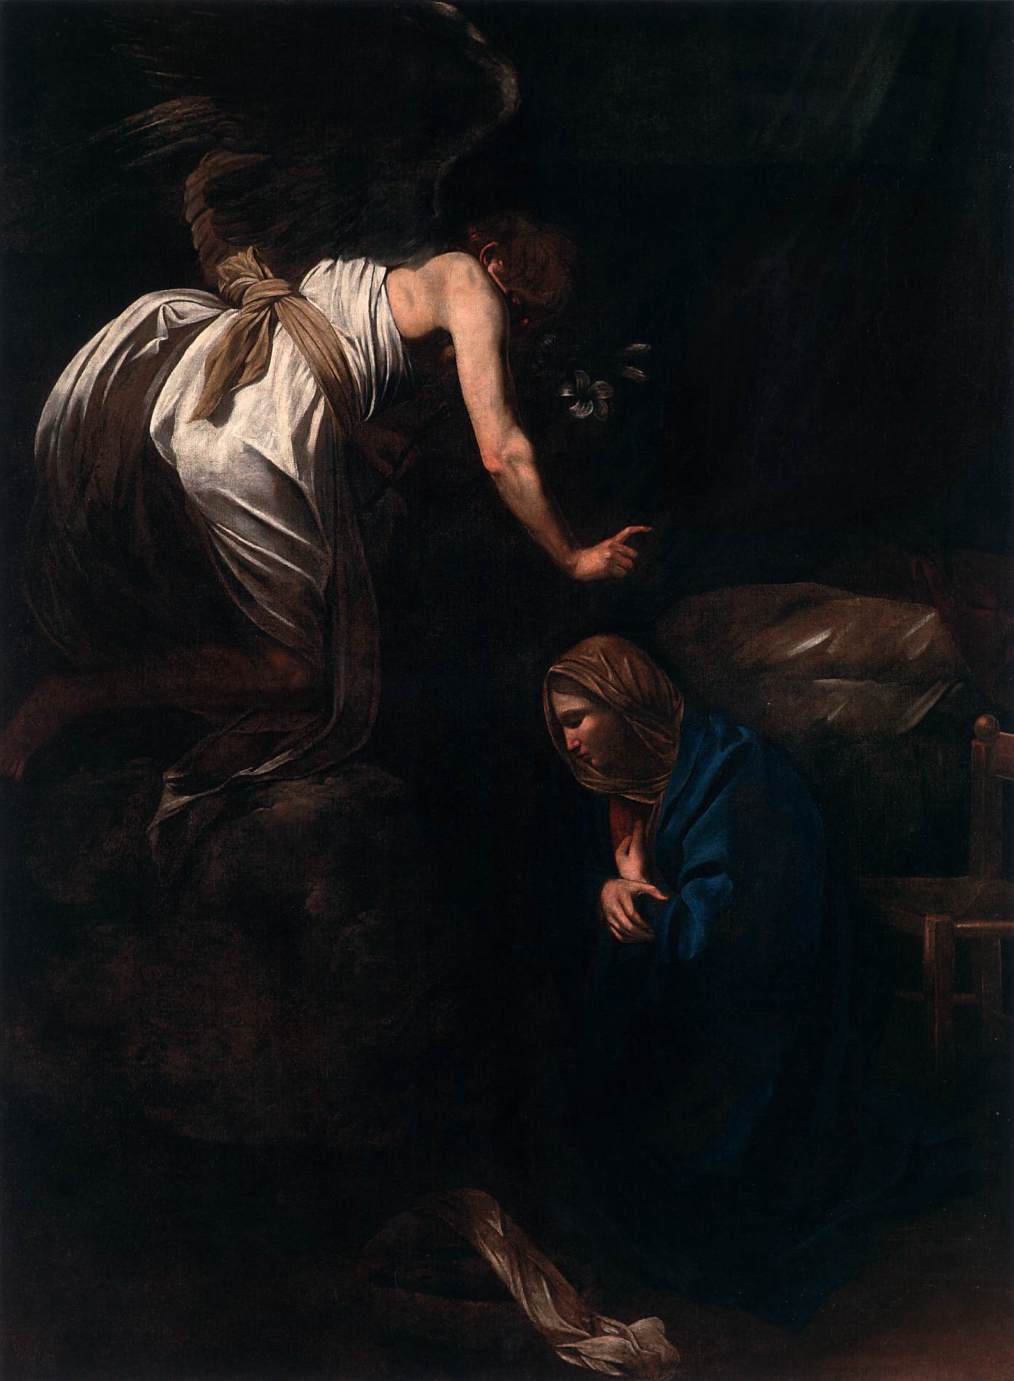 カラヴァッジョ　「受胎告知 」1608-09　　Oil on canvas, 285 x 205 cm　　フランス、ナンシー美術館